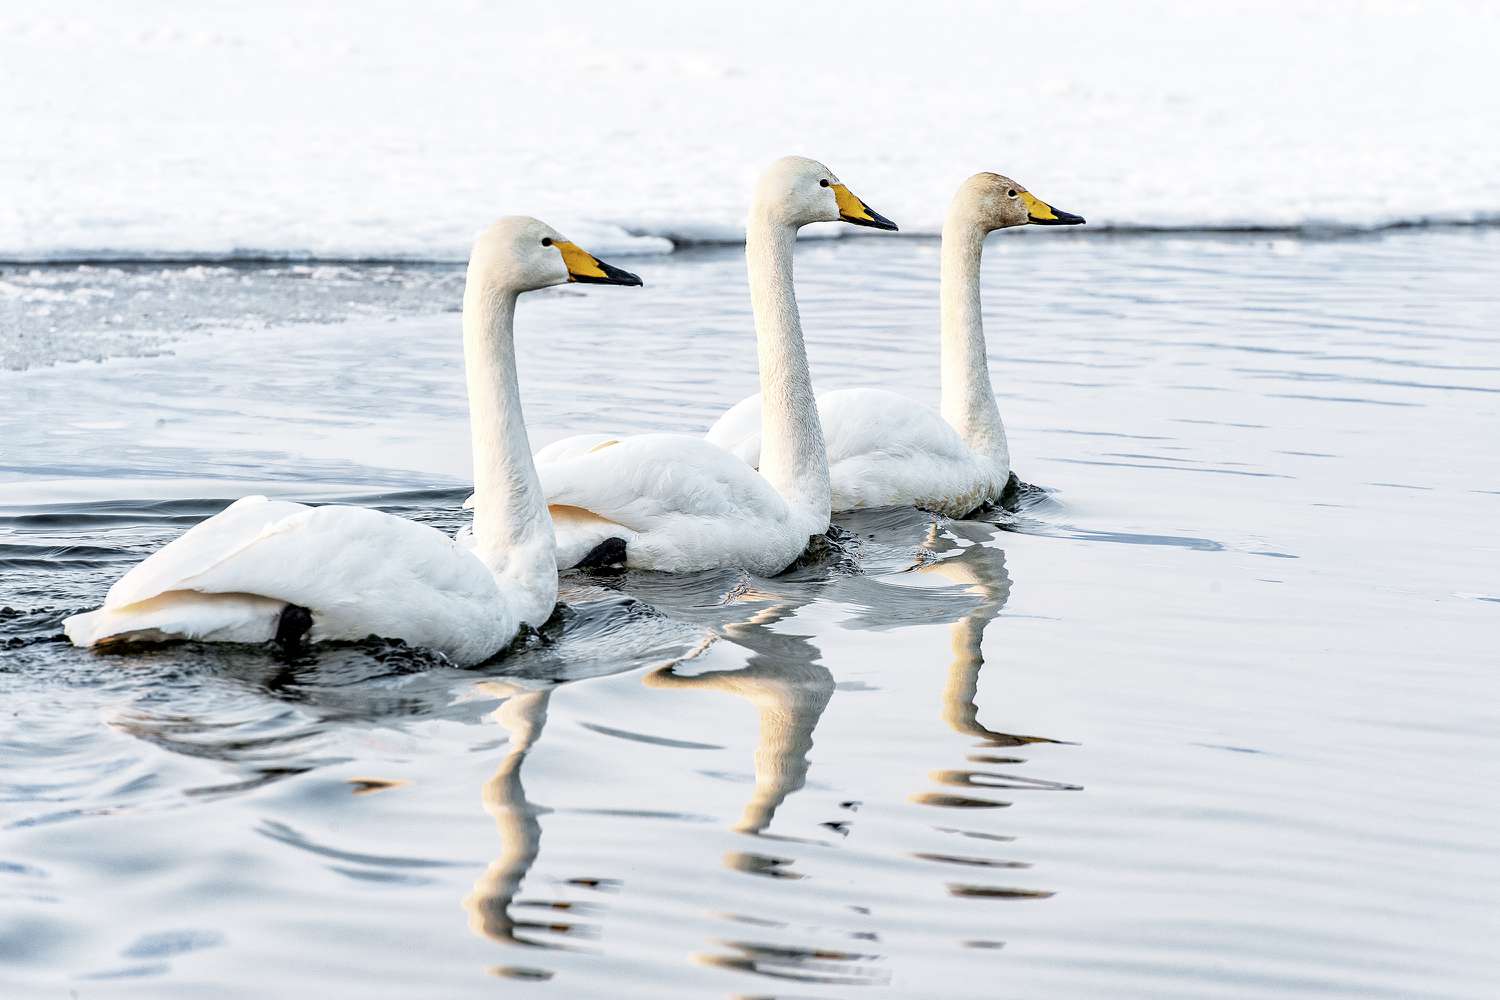 Três cisnes de tundra (Cygnus columbianus) nadando na água